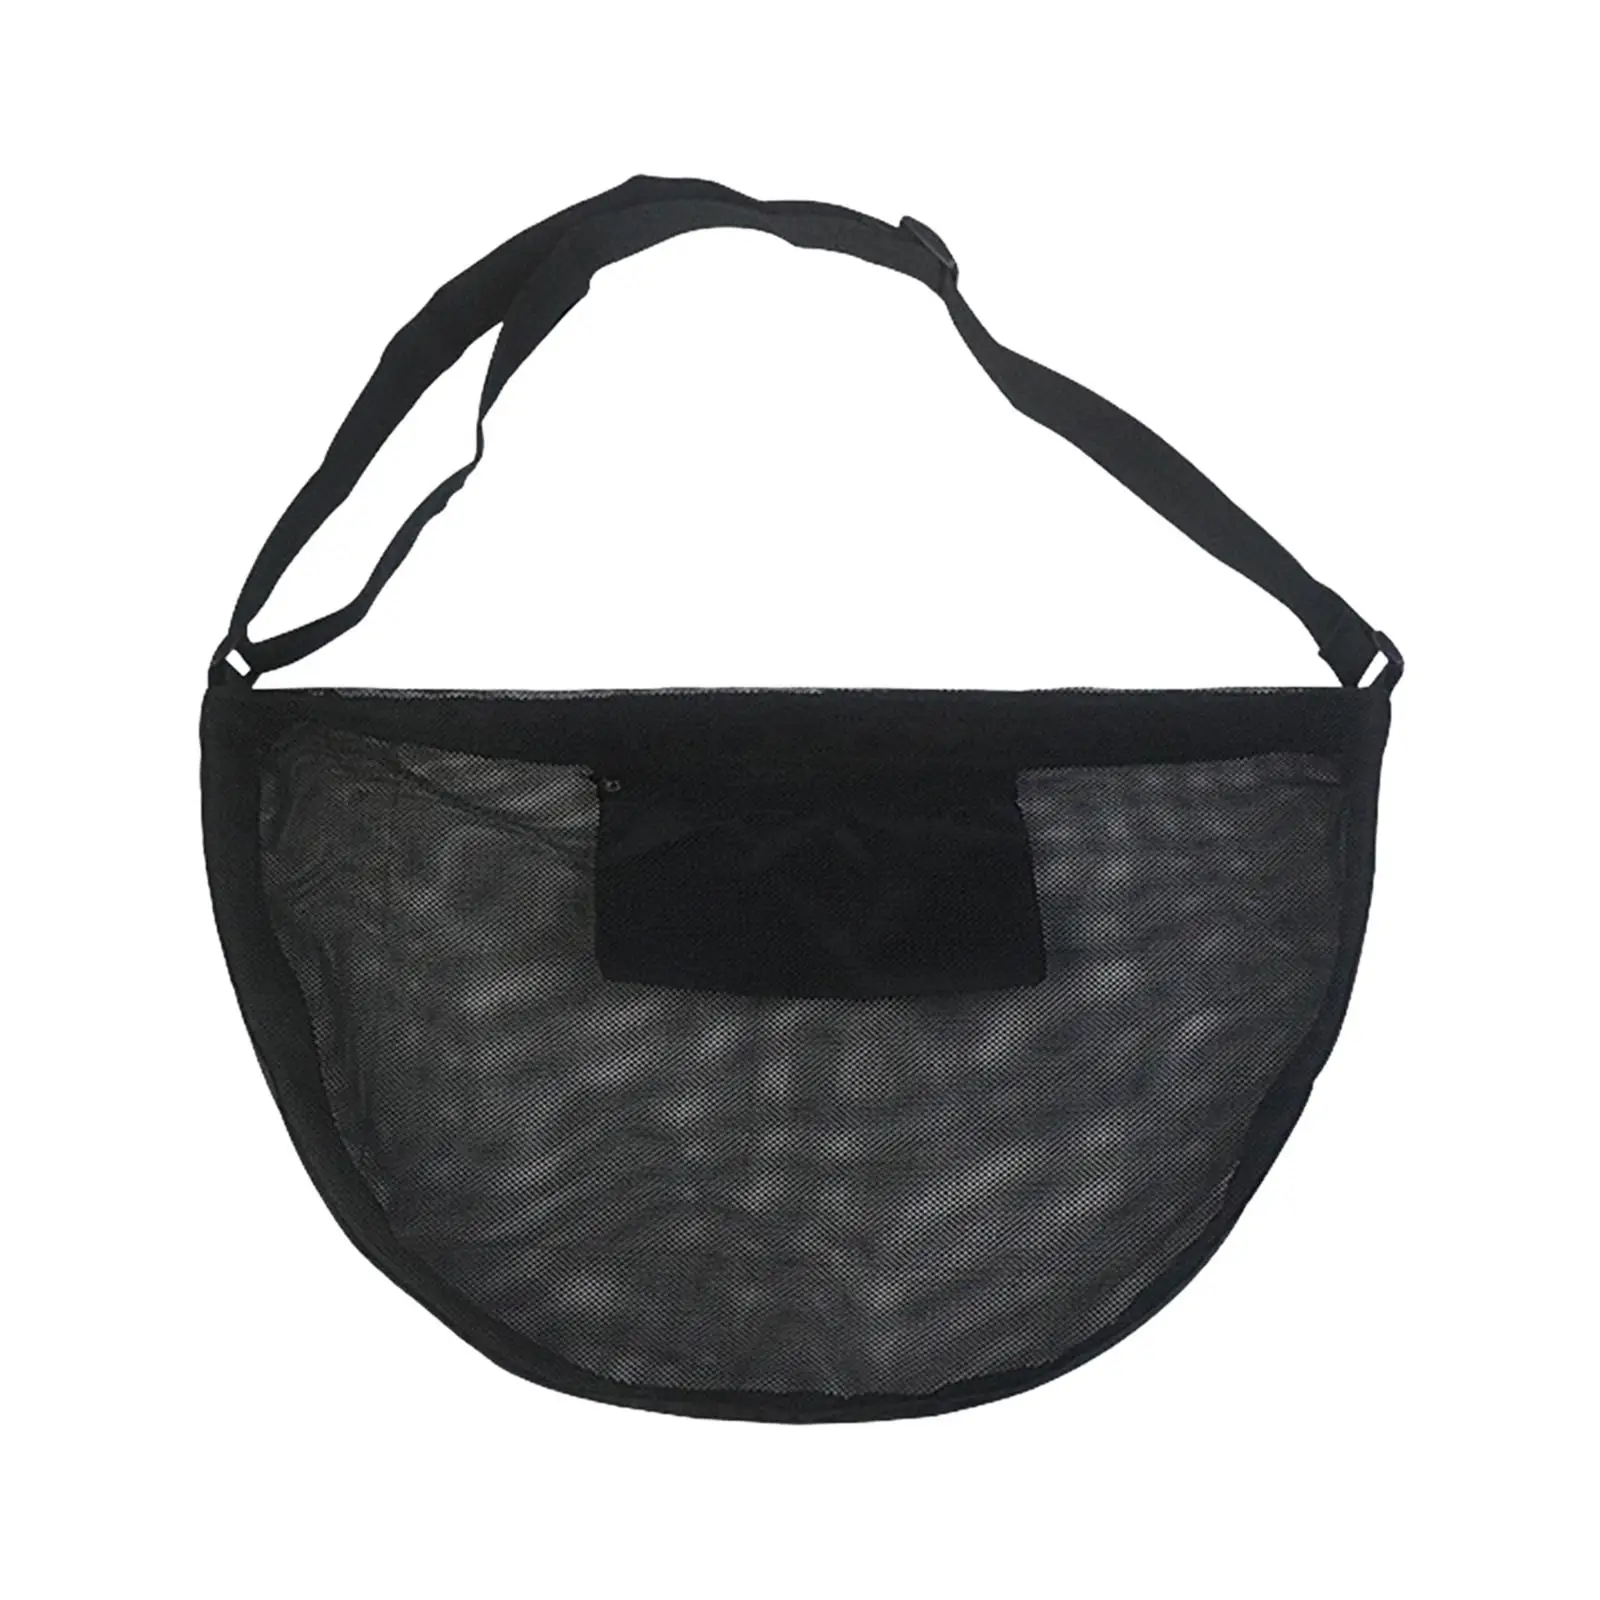 Basketball Shoulder Bag Durable Basketball Mesh Bag for Volleyball